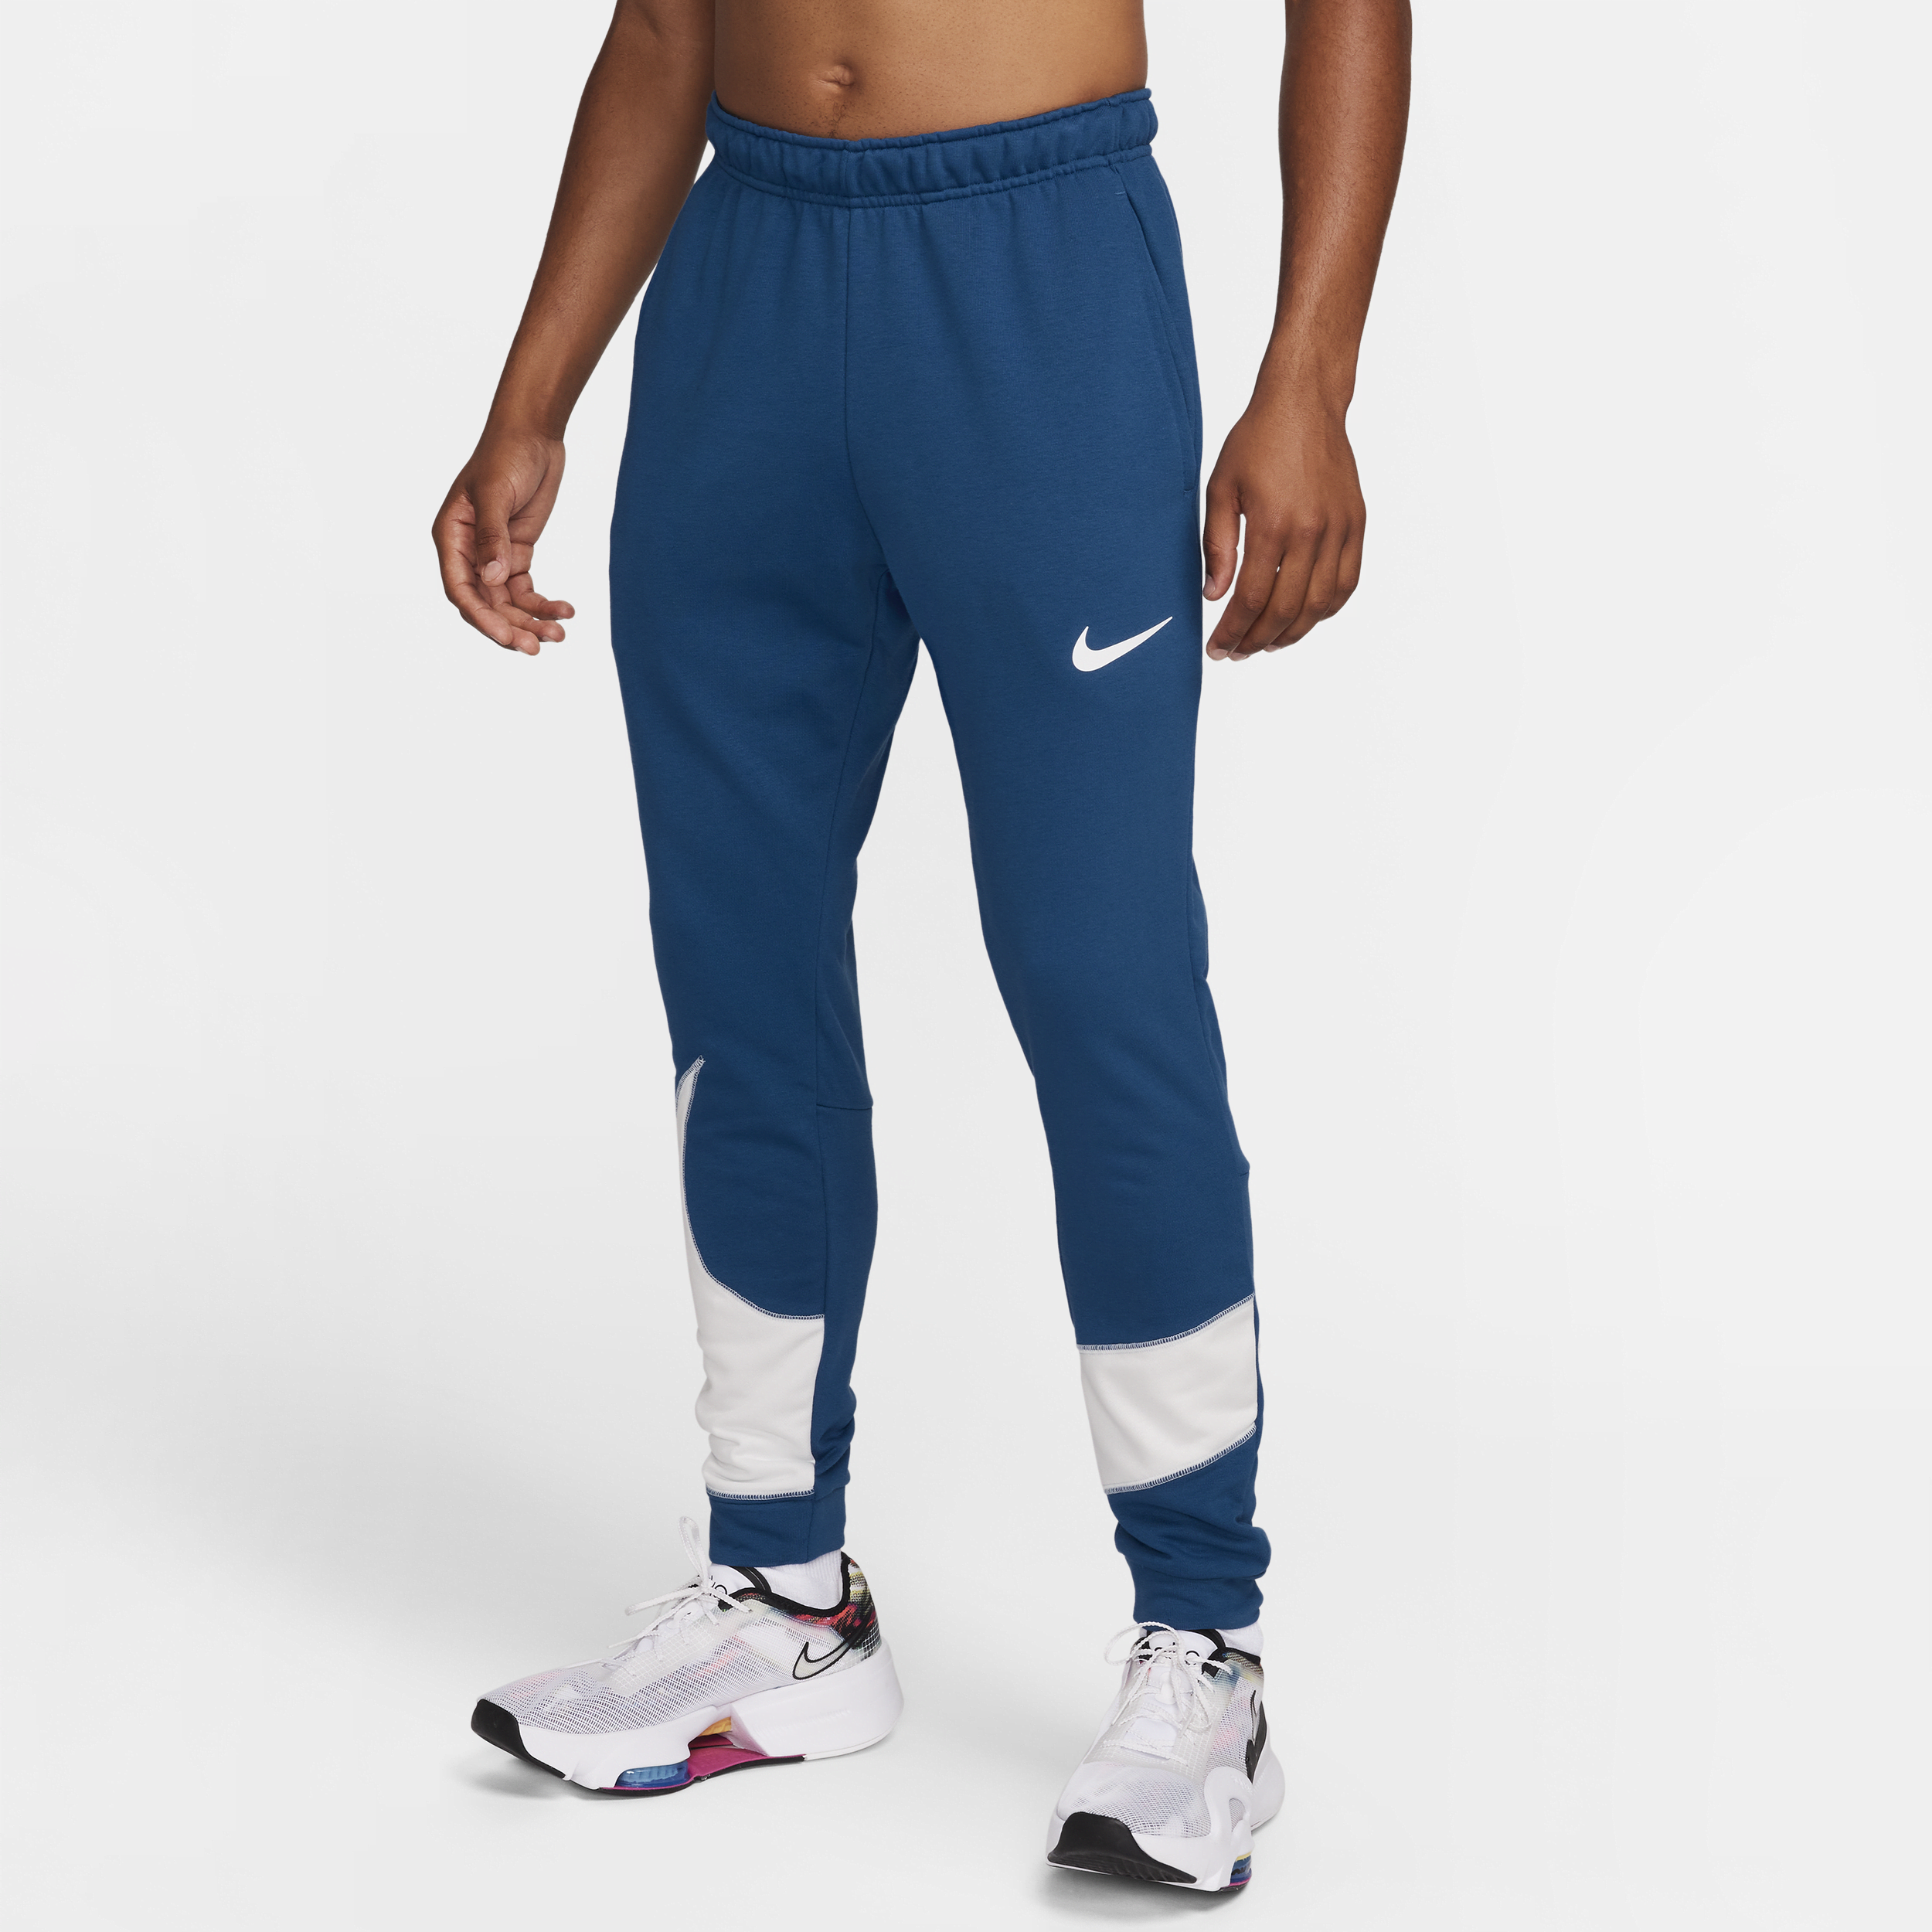 Nike Dri-FIT Pantalón deportivo entallado - Hombre - Azul